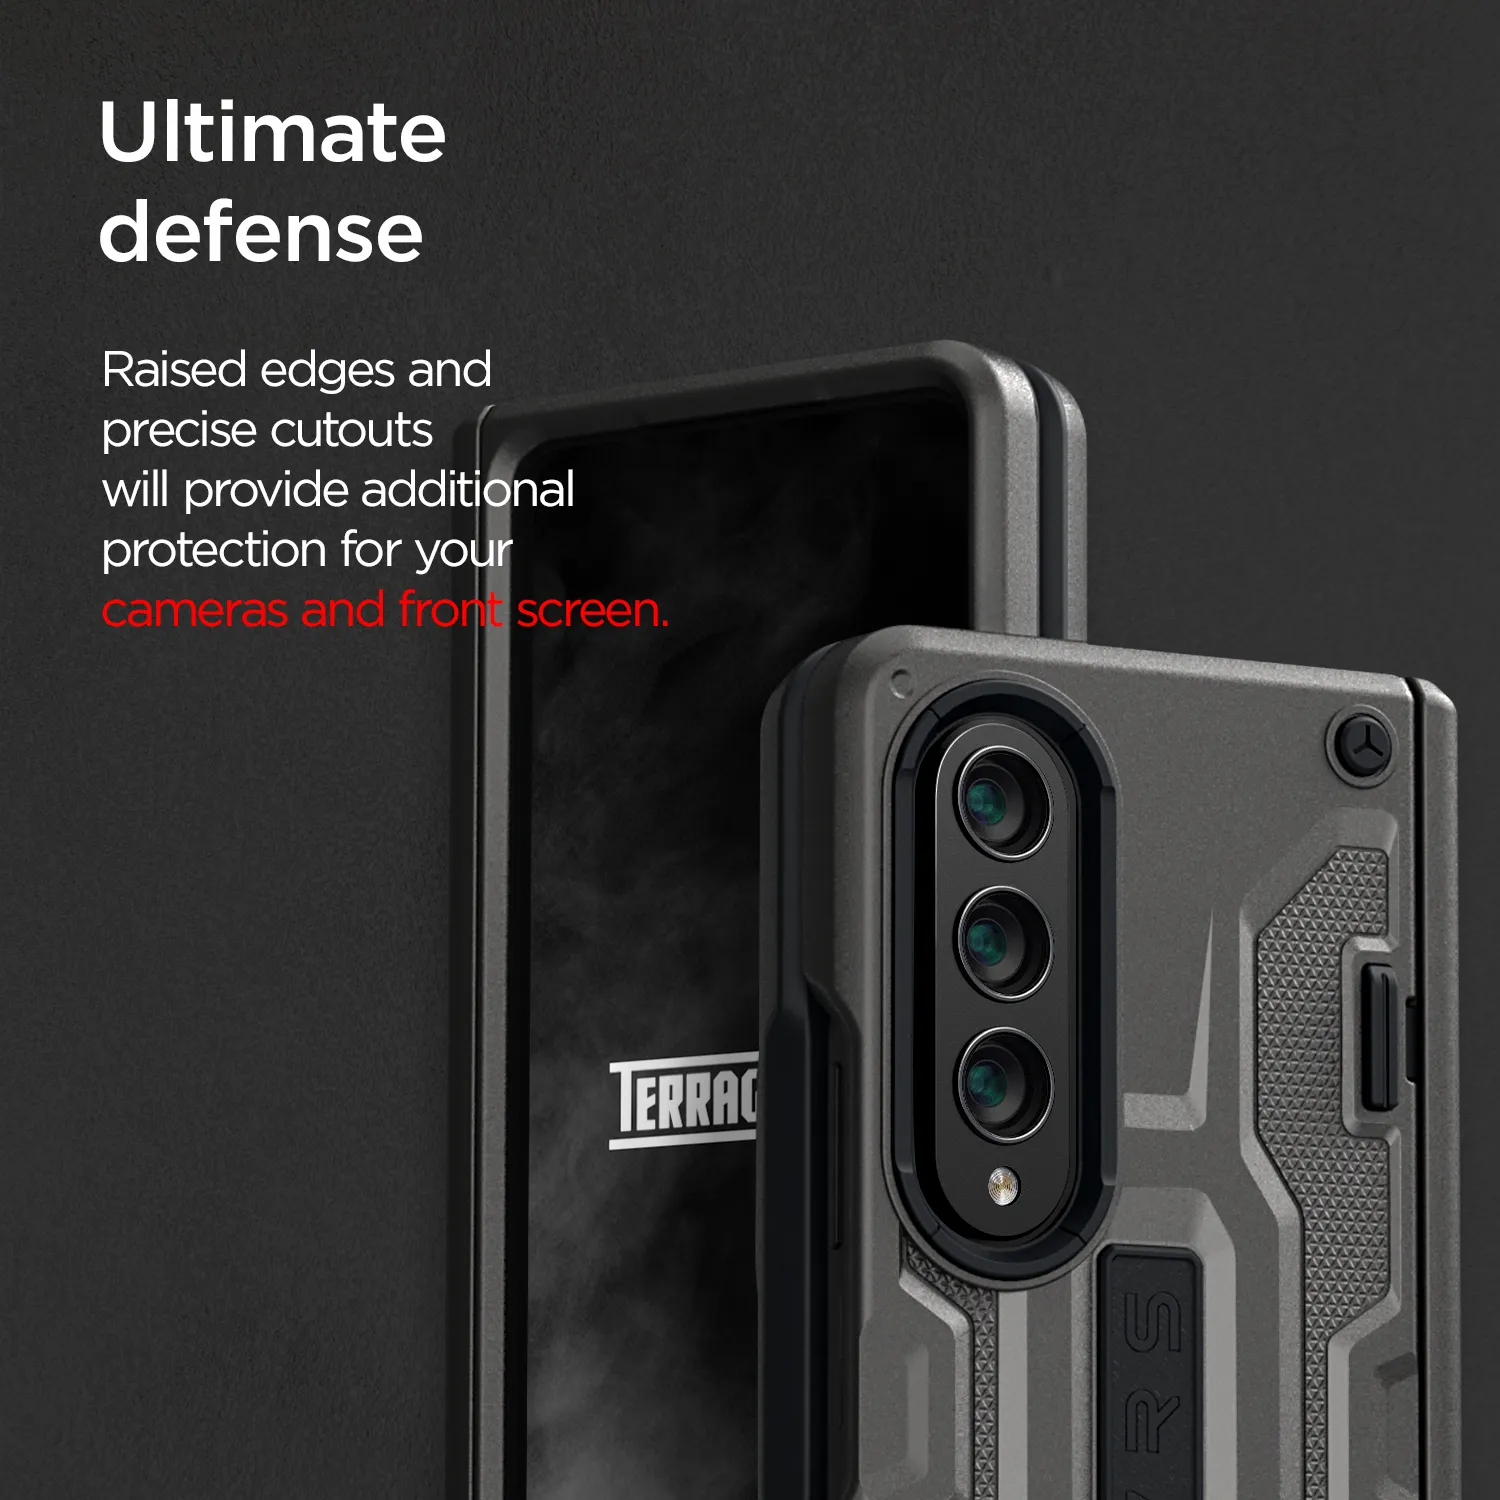 เคส VRS รุ่น Terra Guard Active - Galaxy Z Fold 4 - สี Matte Black